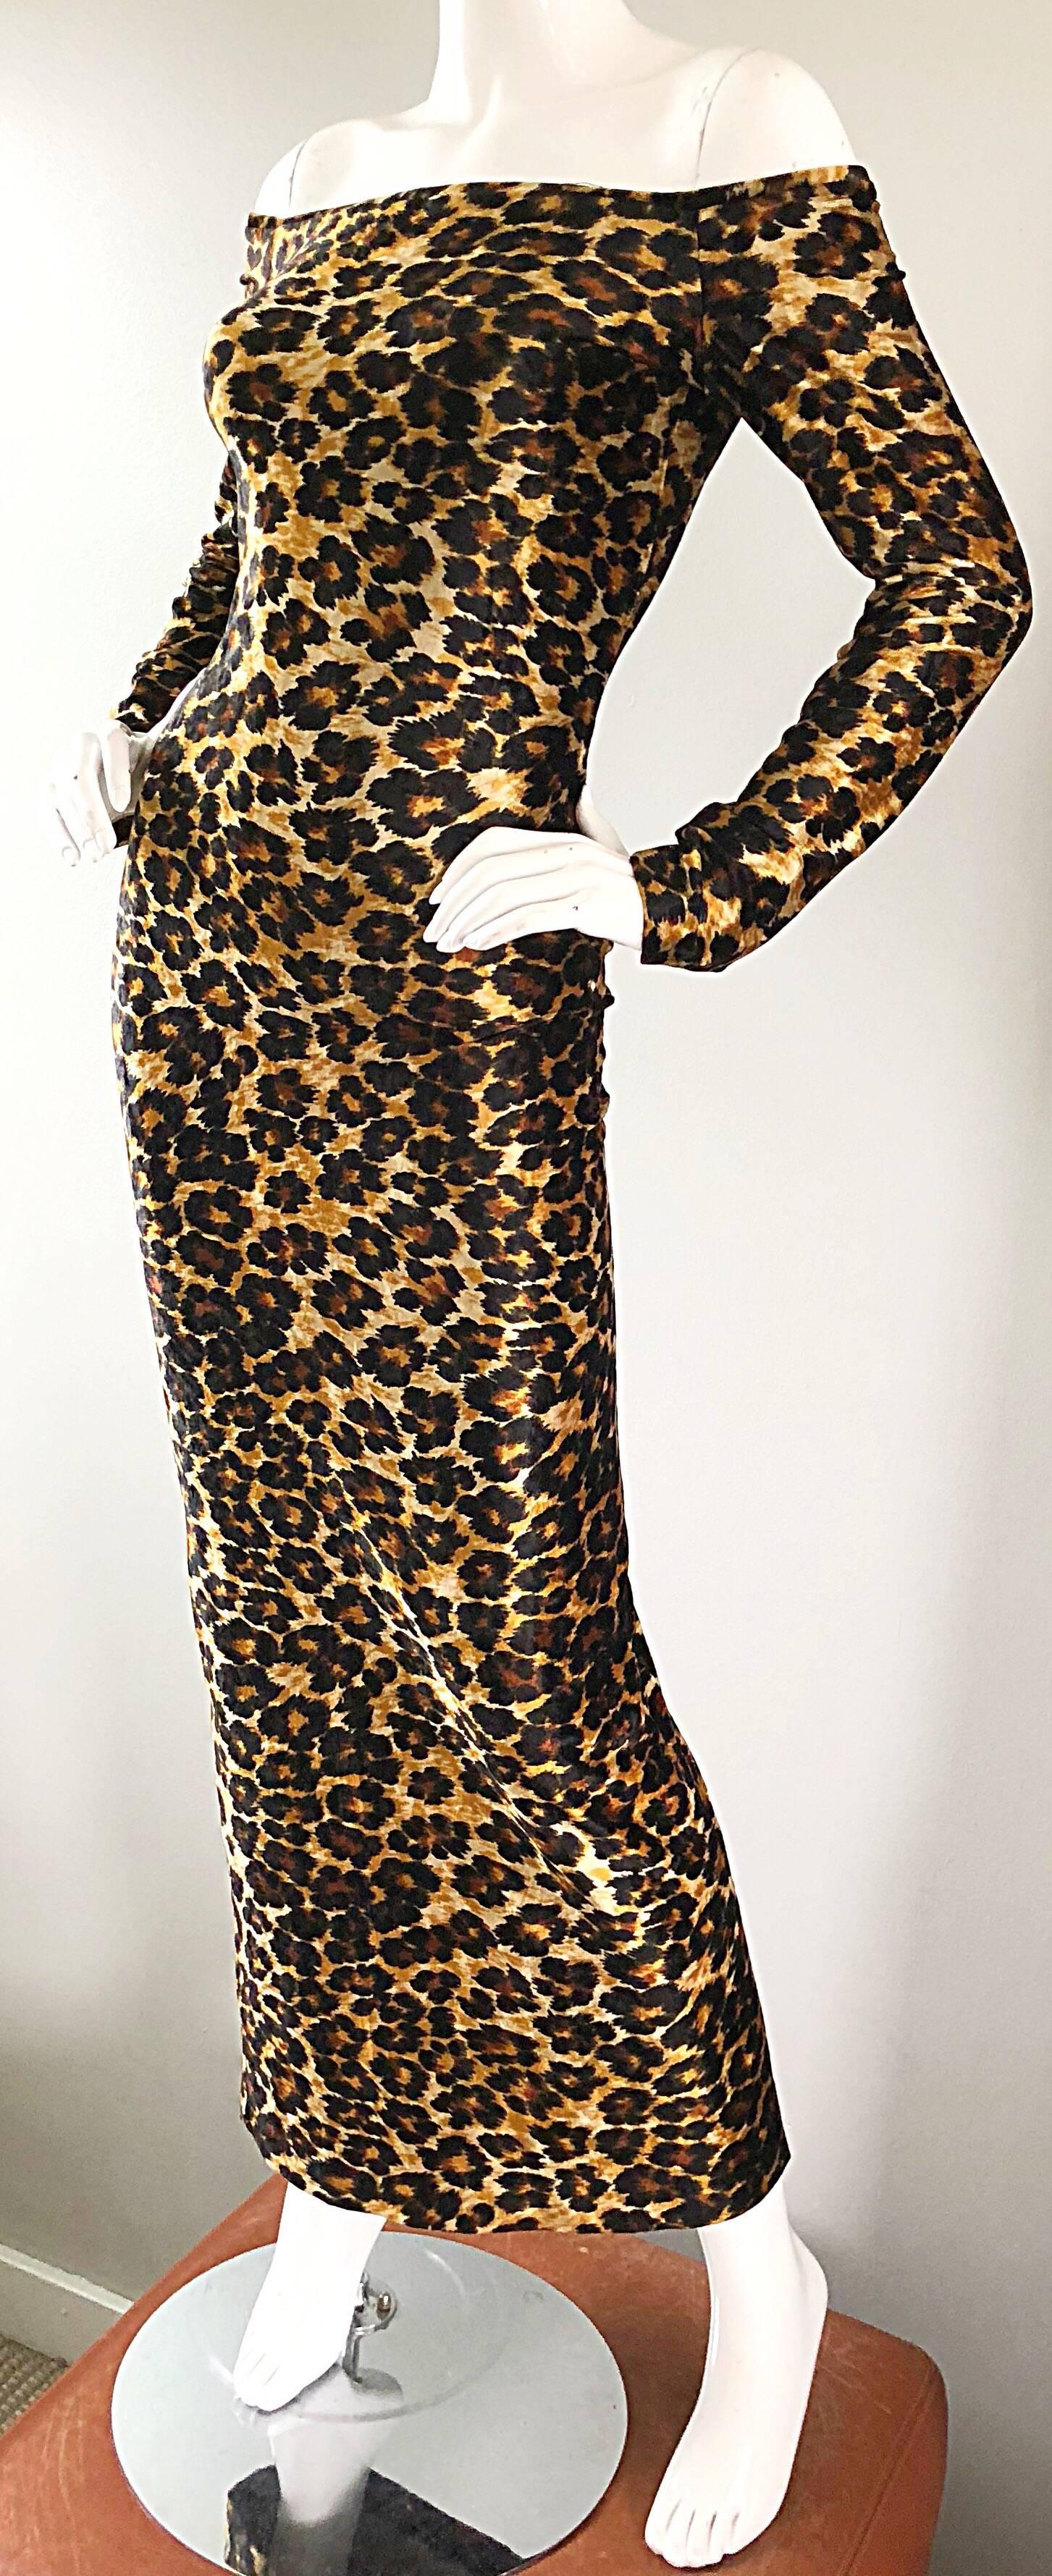 80s leopard print dress